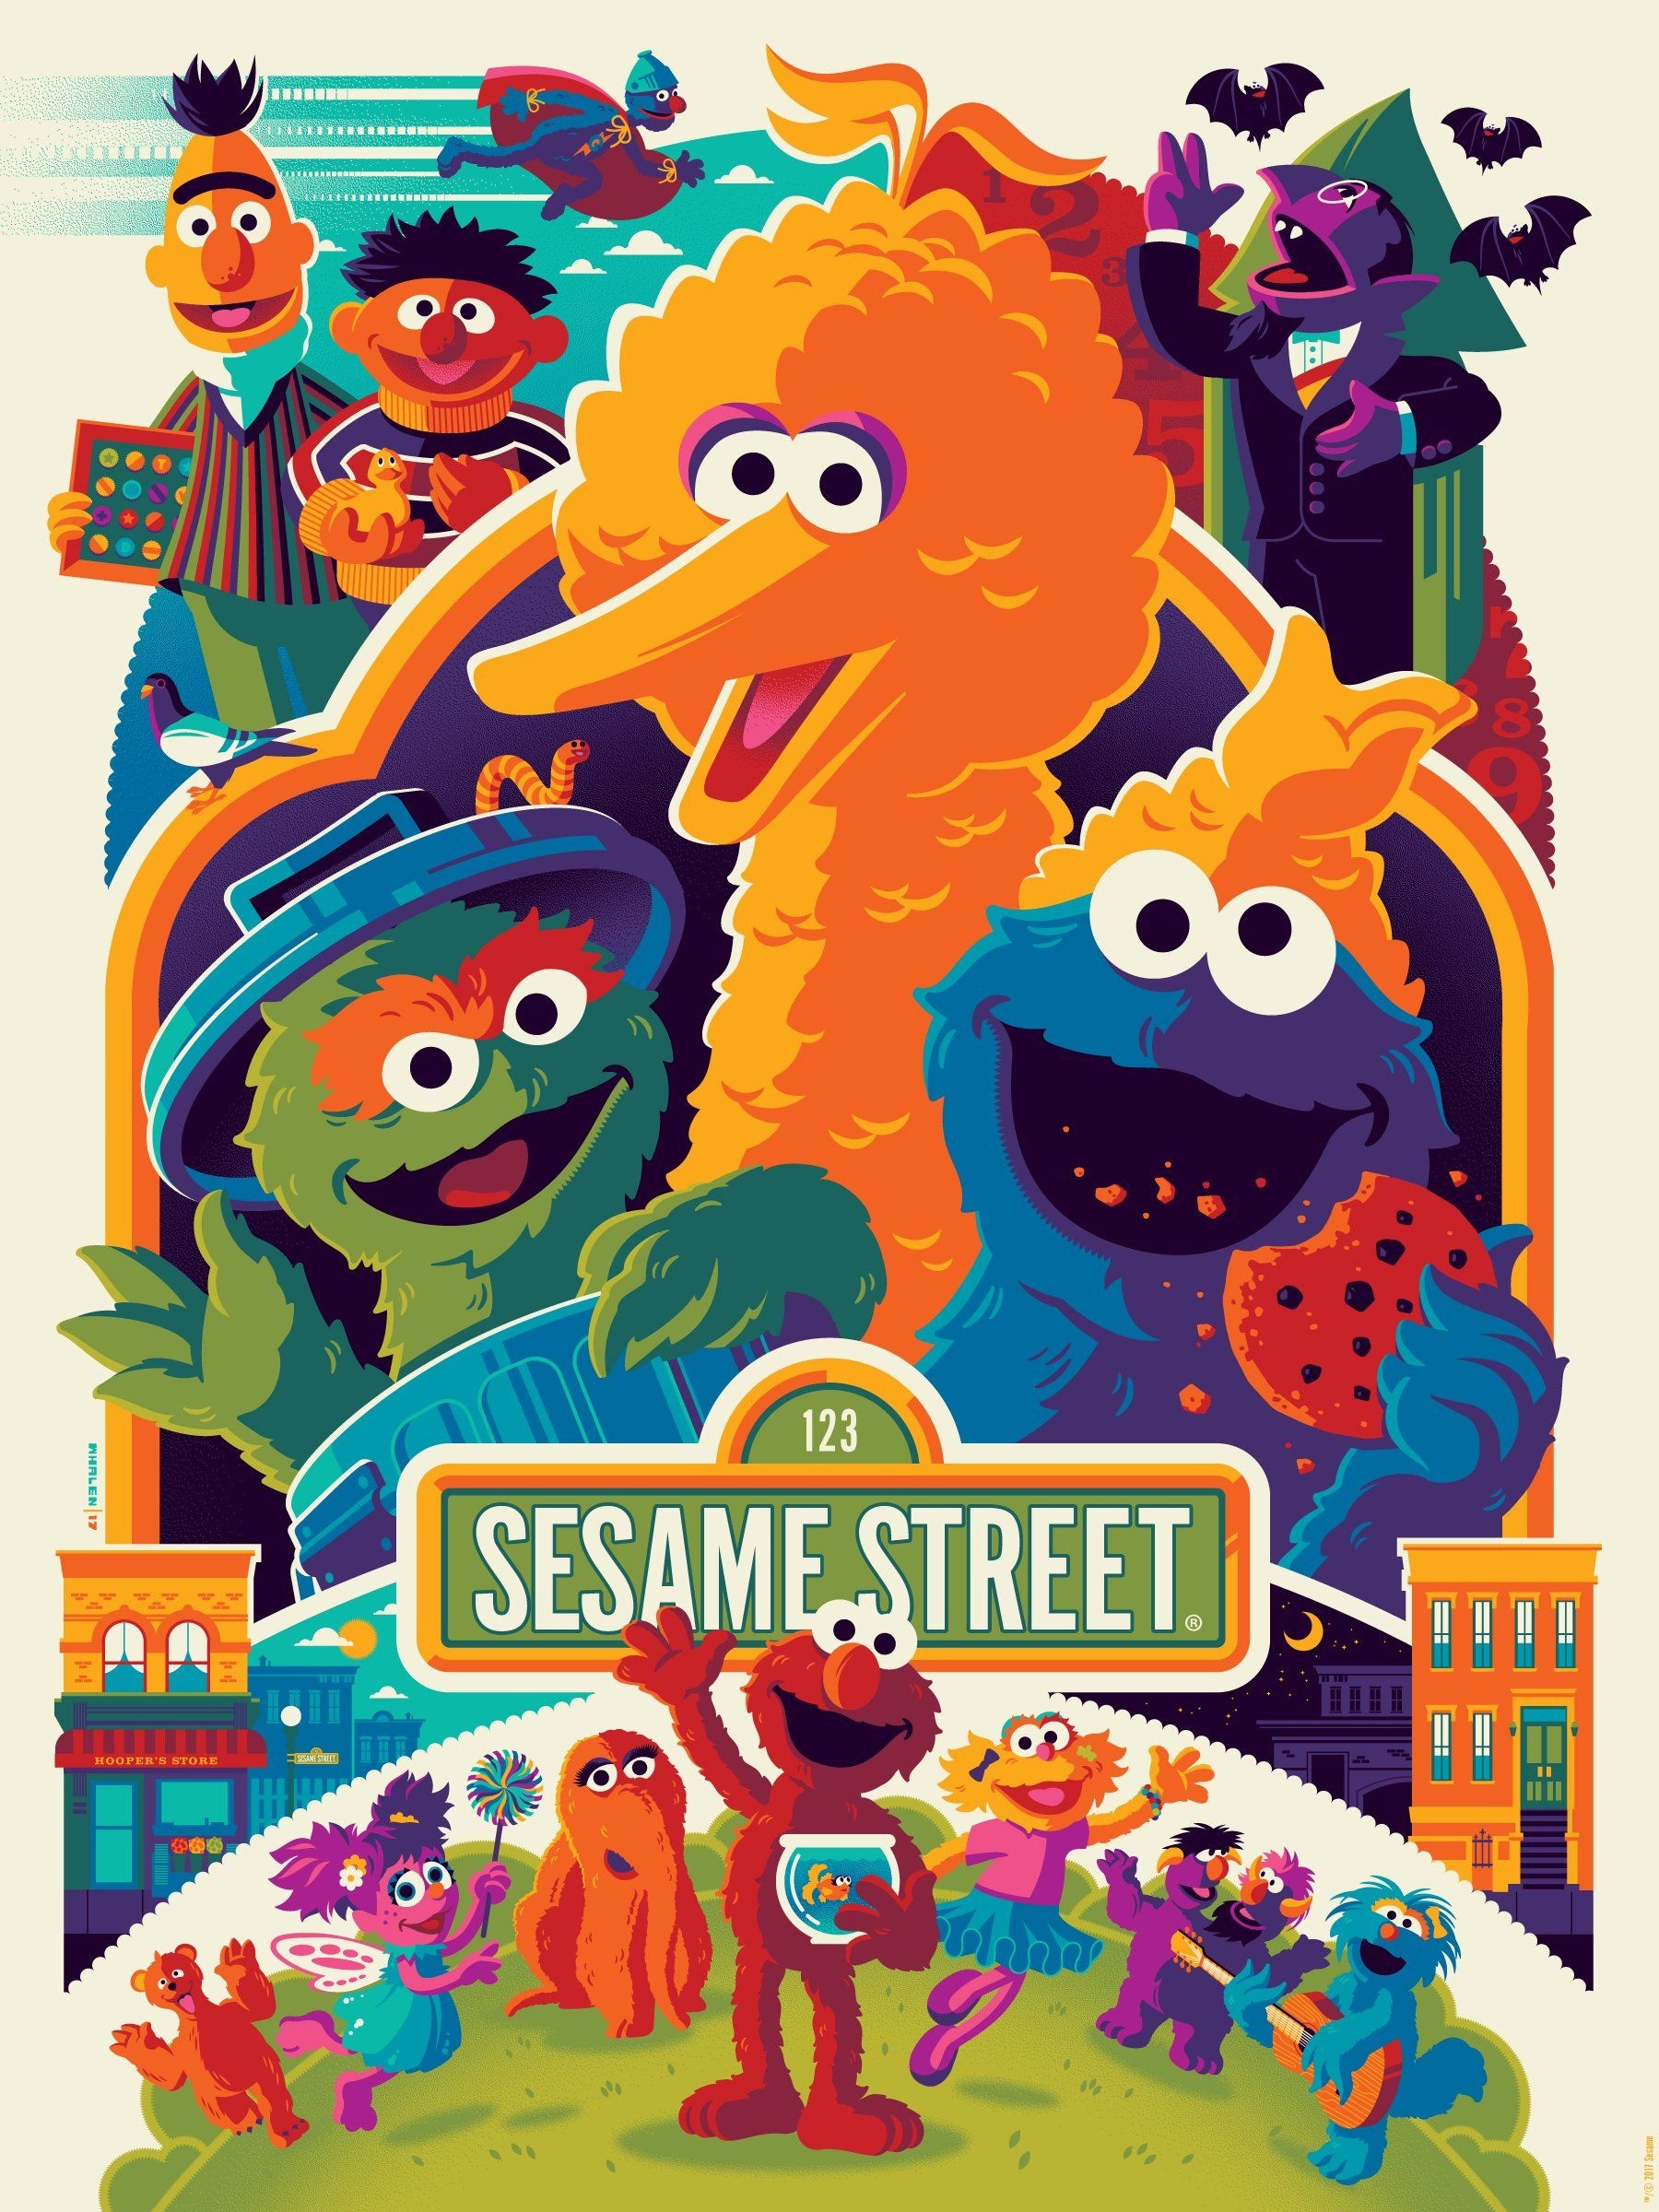 Sesame Street: The Muppets fan art, Elmo, Big Bird, Cookie Monster, Ernie, Bert. 1800x2400 HD Wallpaper.